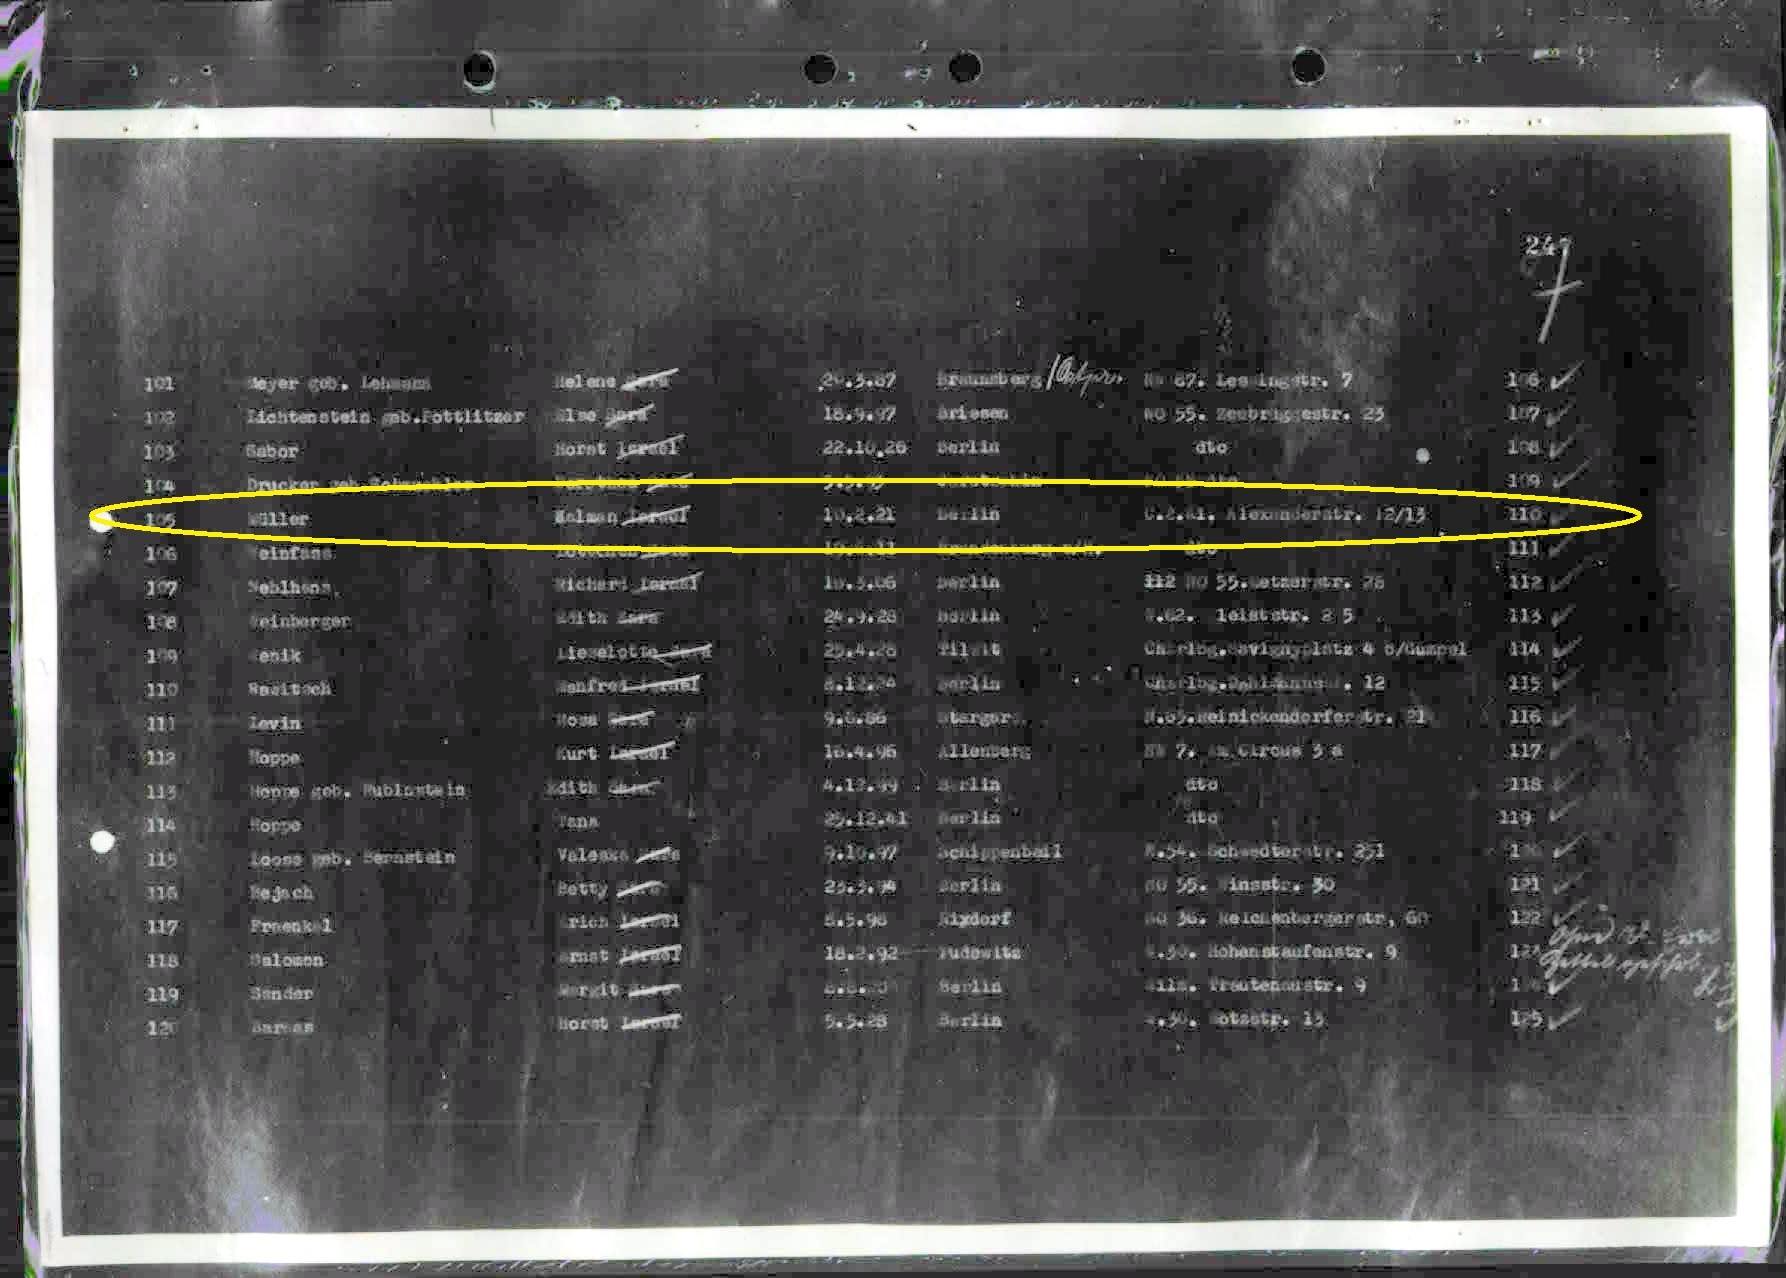 משלוח מספר 6 מברלין לאושוויץ. קלמן מילר, דודו של יוחי שנספה במחנה (מוקף בצהוב)